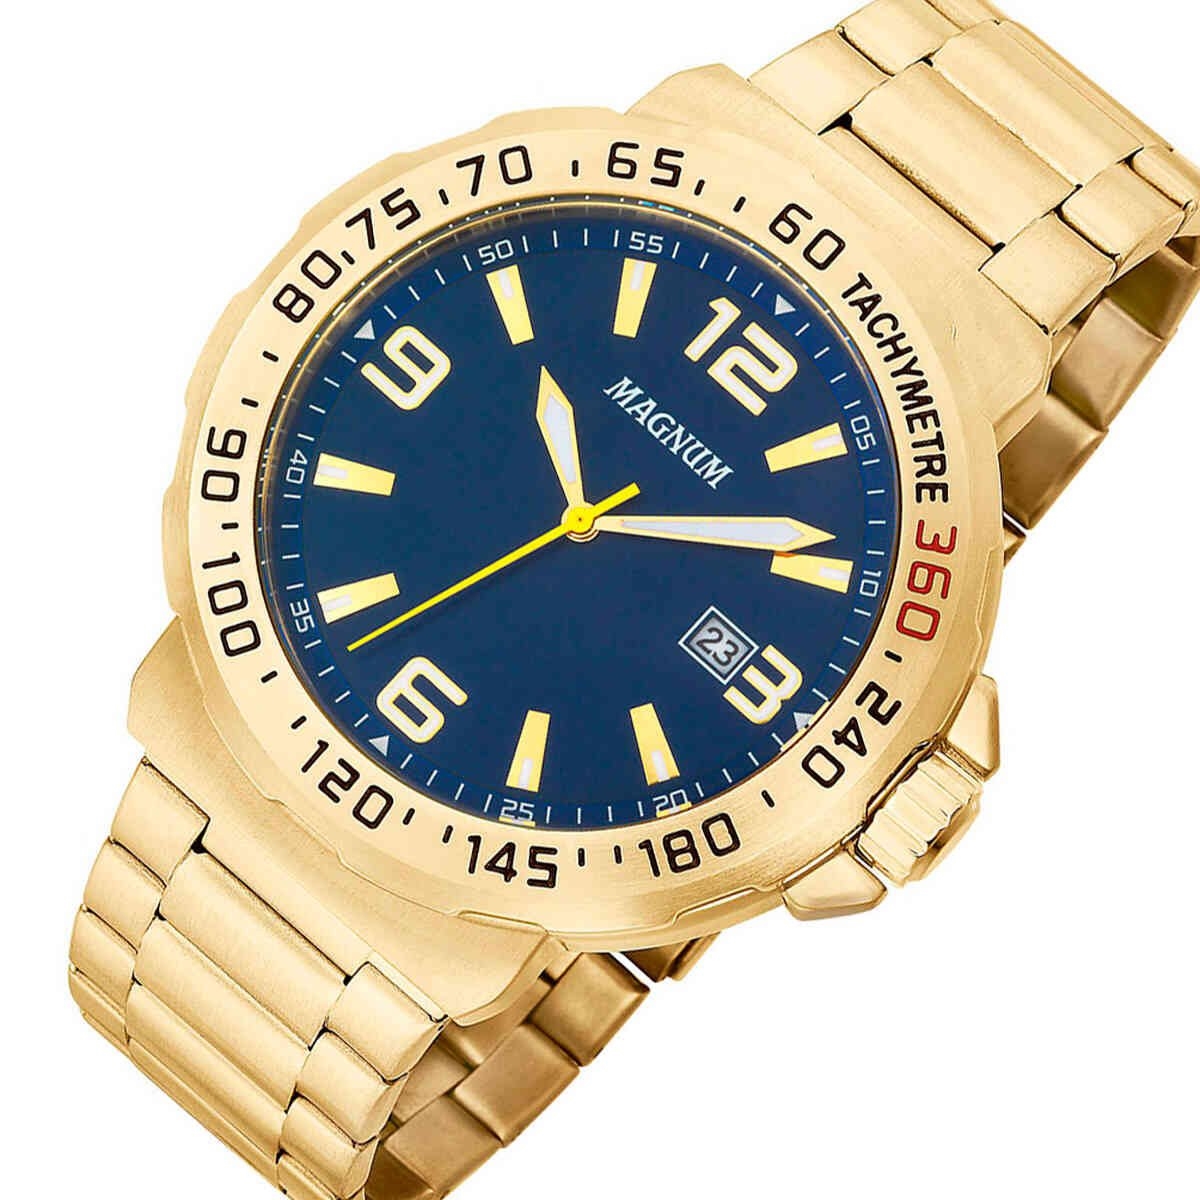 Relógios Web Shop - Loja Oficial Loja Credenciada Relógio Magnum Masculino  Ref: Ma35039a Casual Dourado